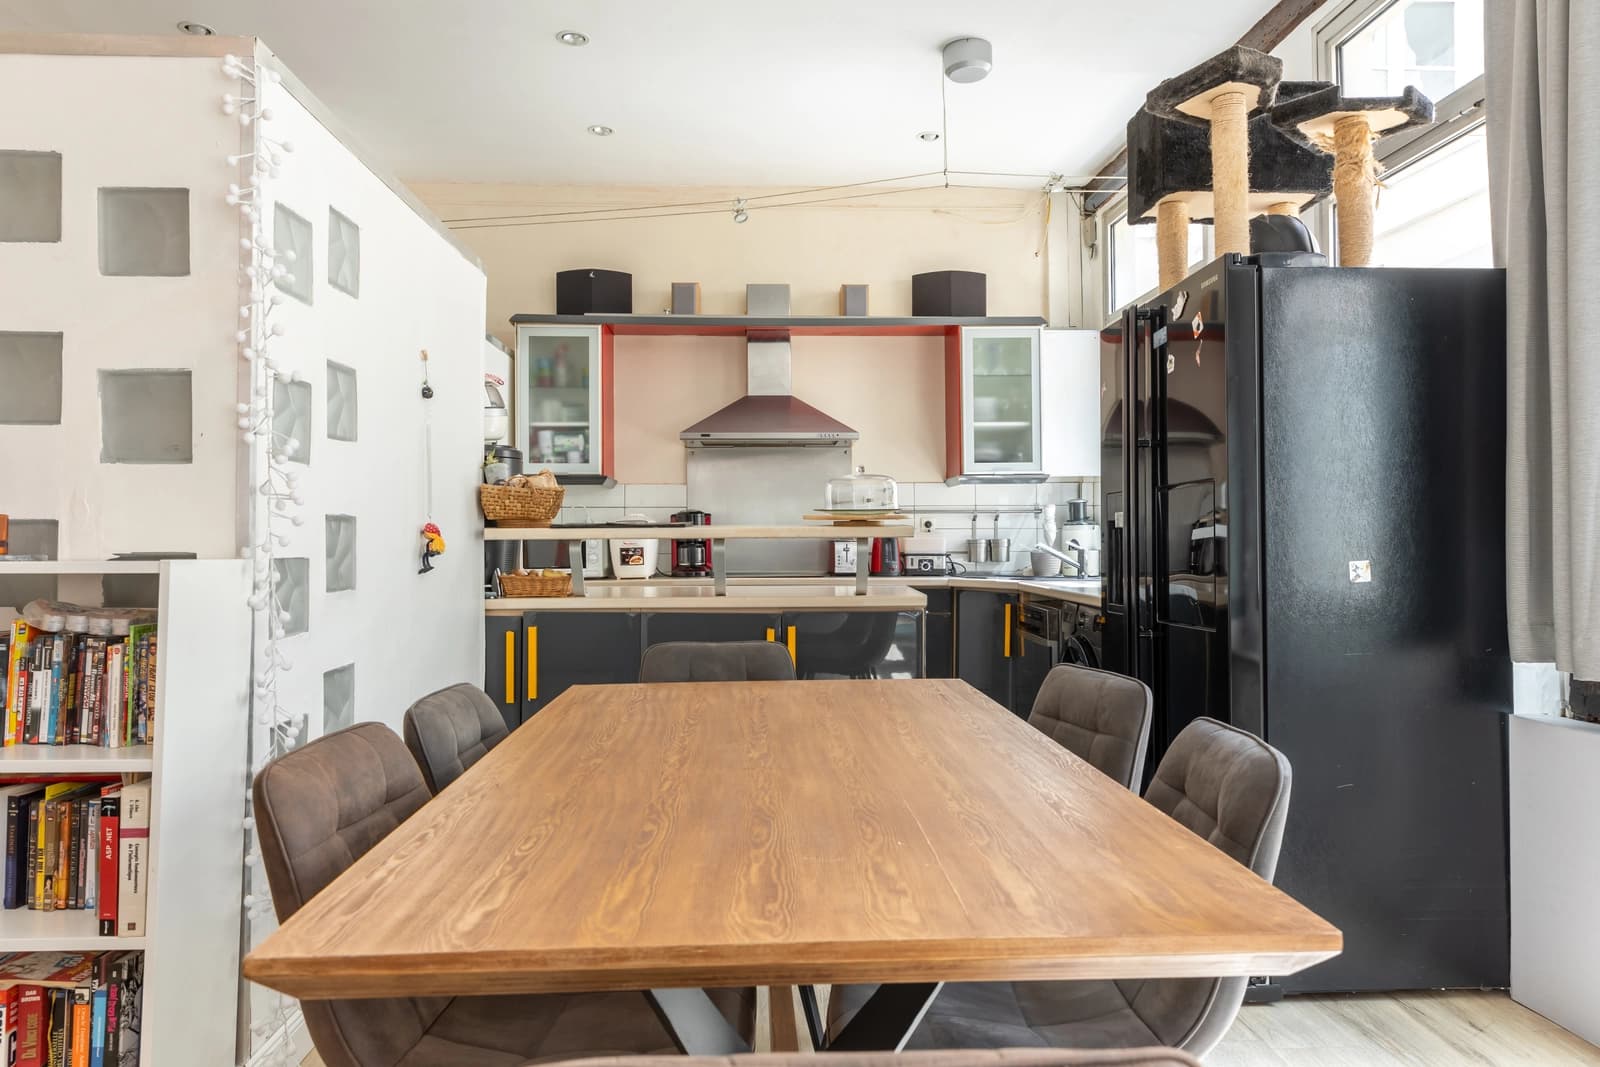 Kitchen dentro Loft de estilo industrial en una zona tranquila - 5